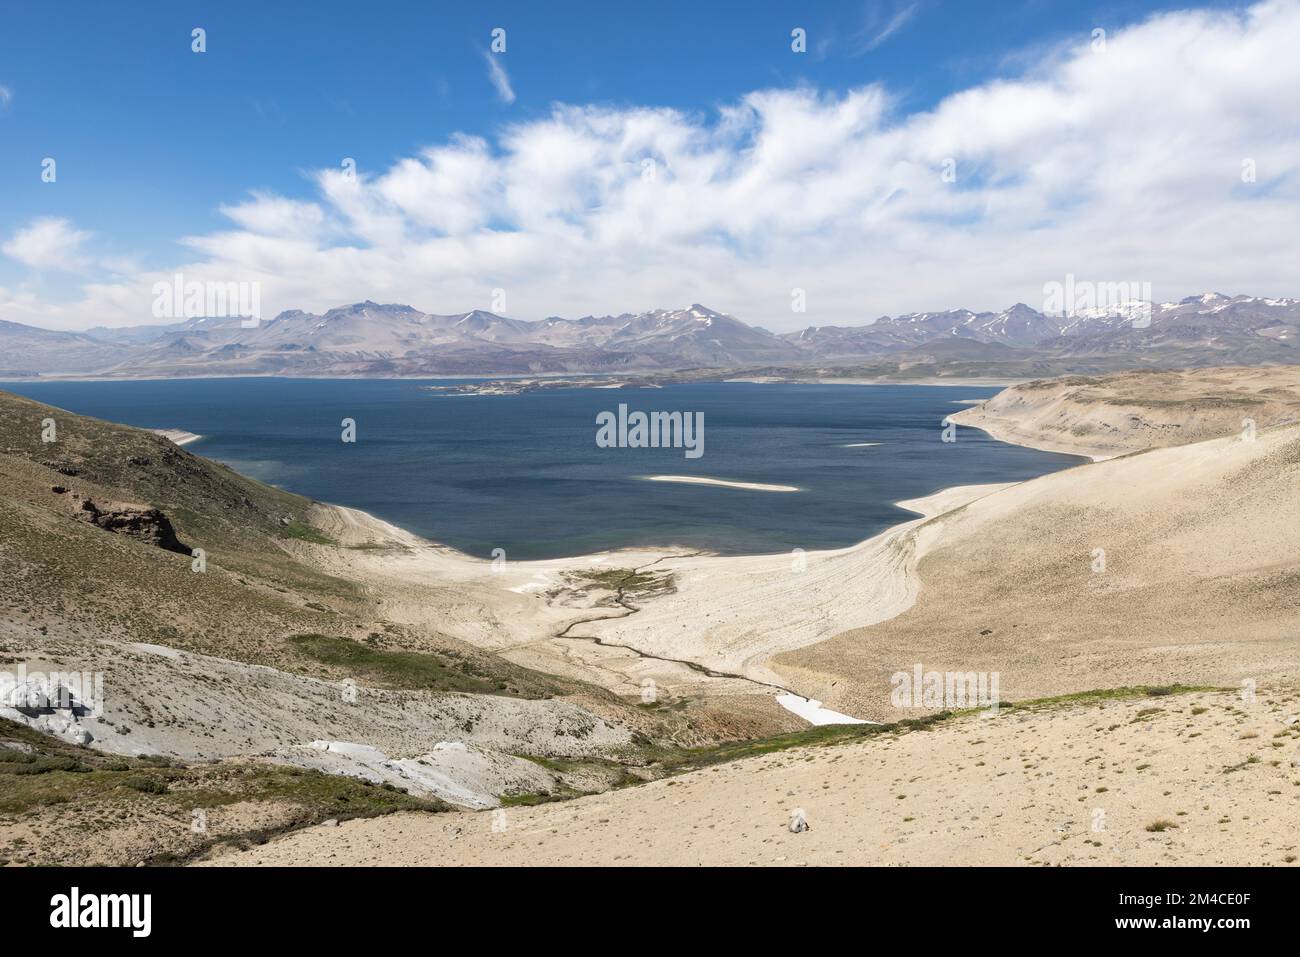 Landscape at Laguna del Maule in Chile, South America Stock Photo